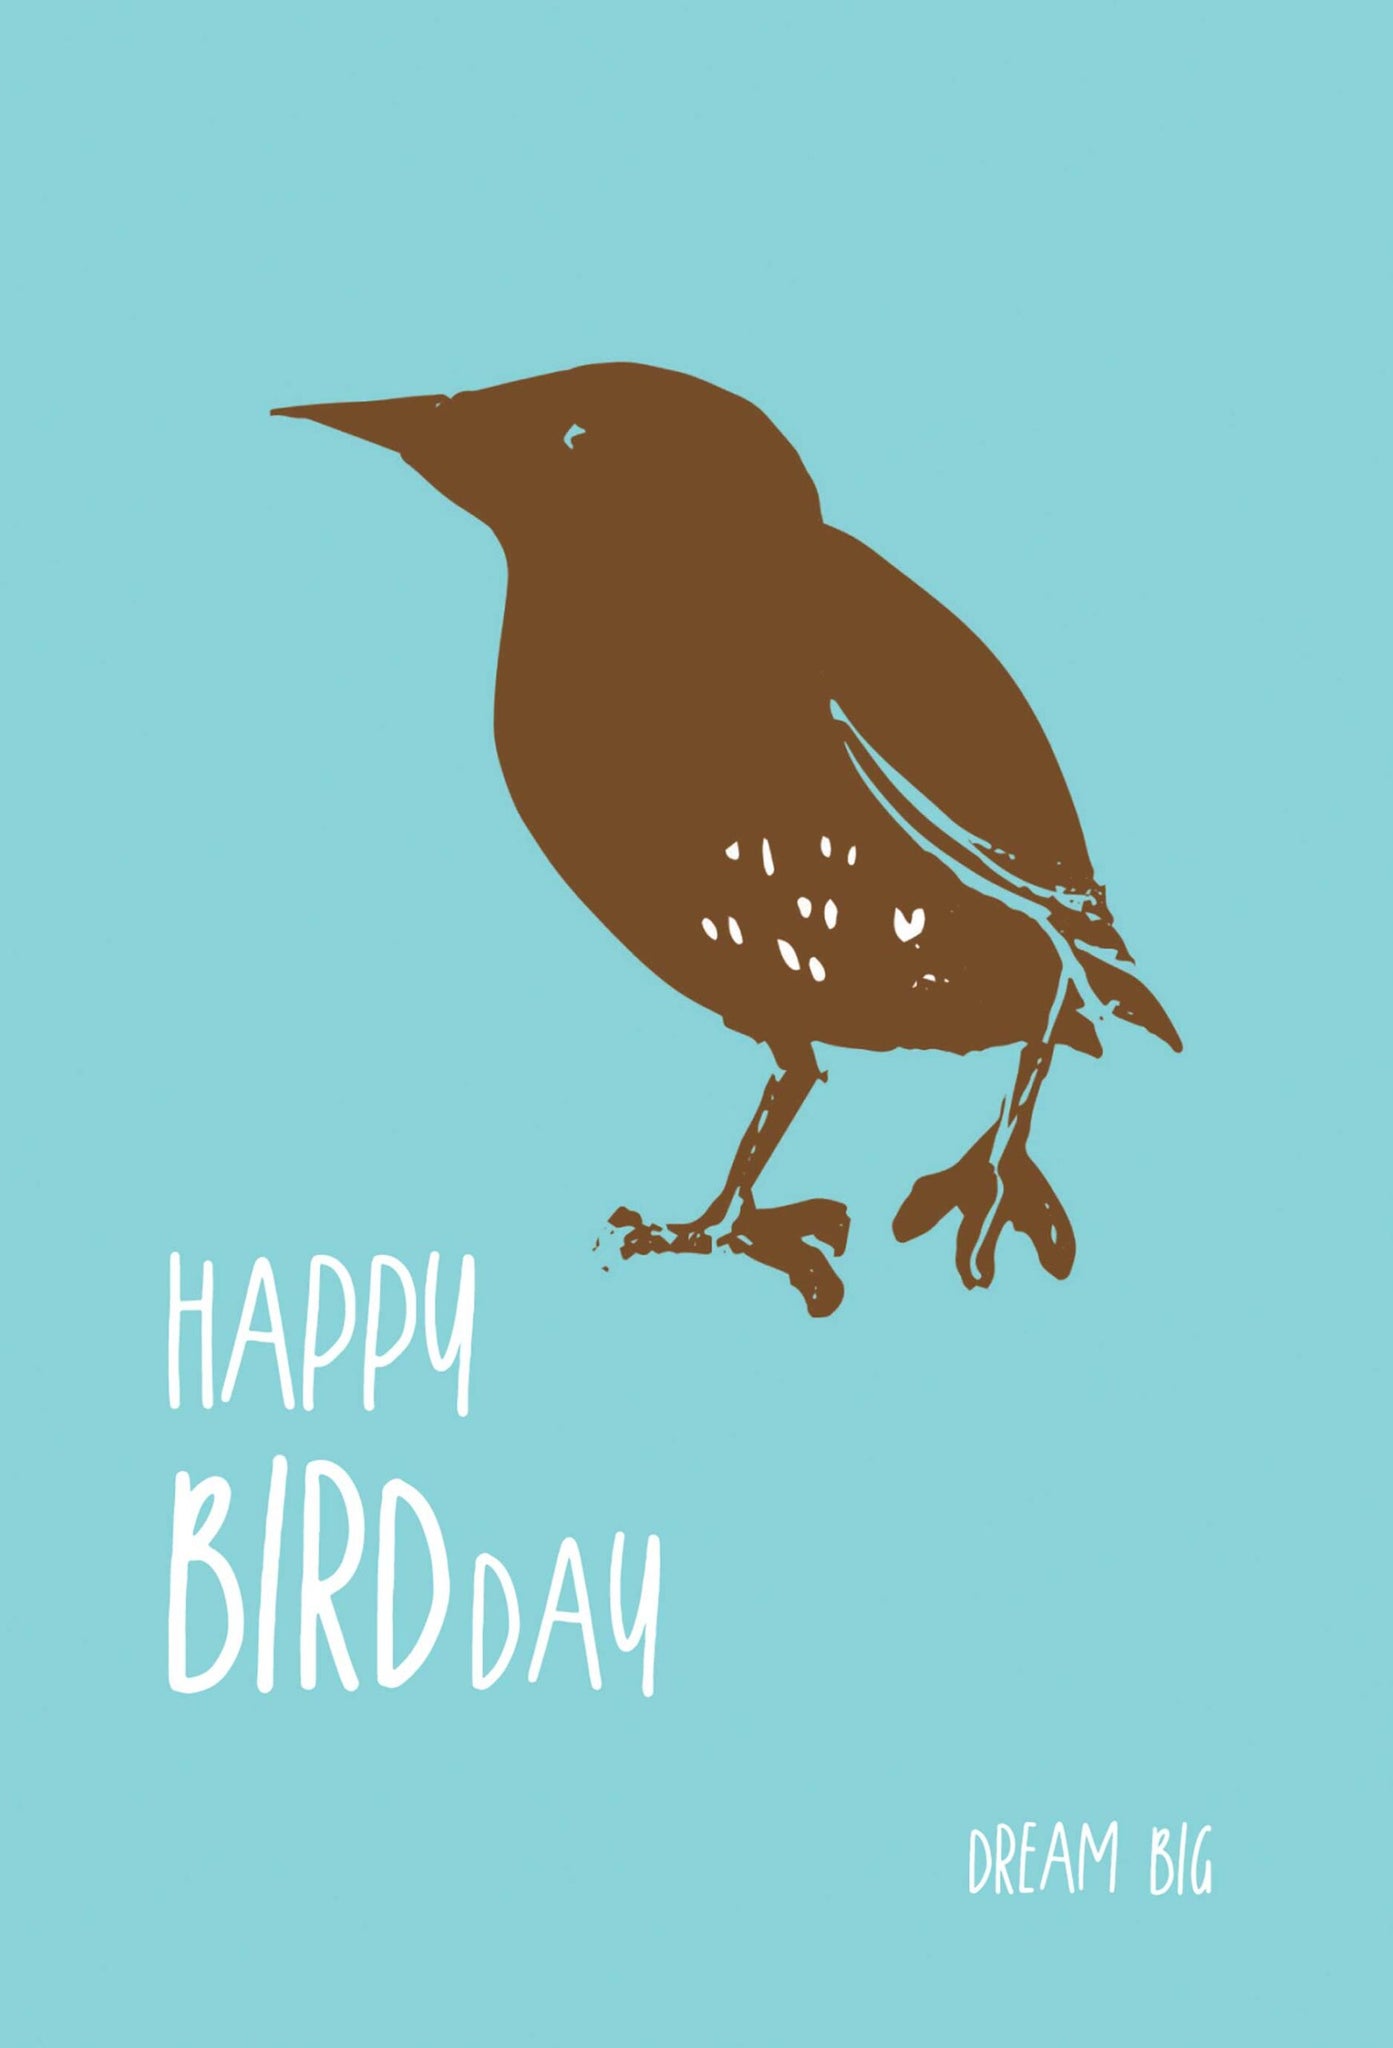 Happy Bird Day, Dream Big Card